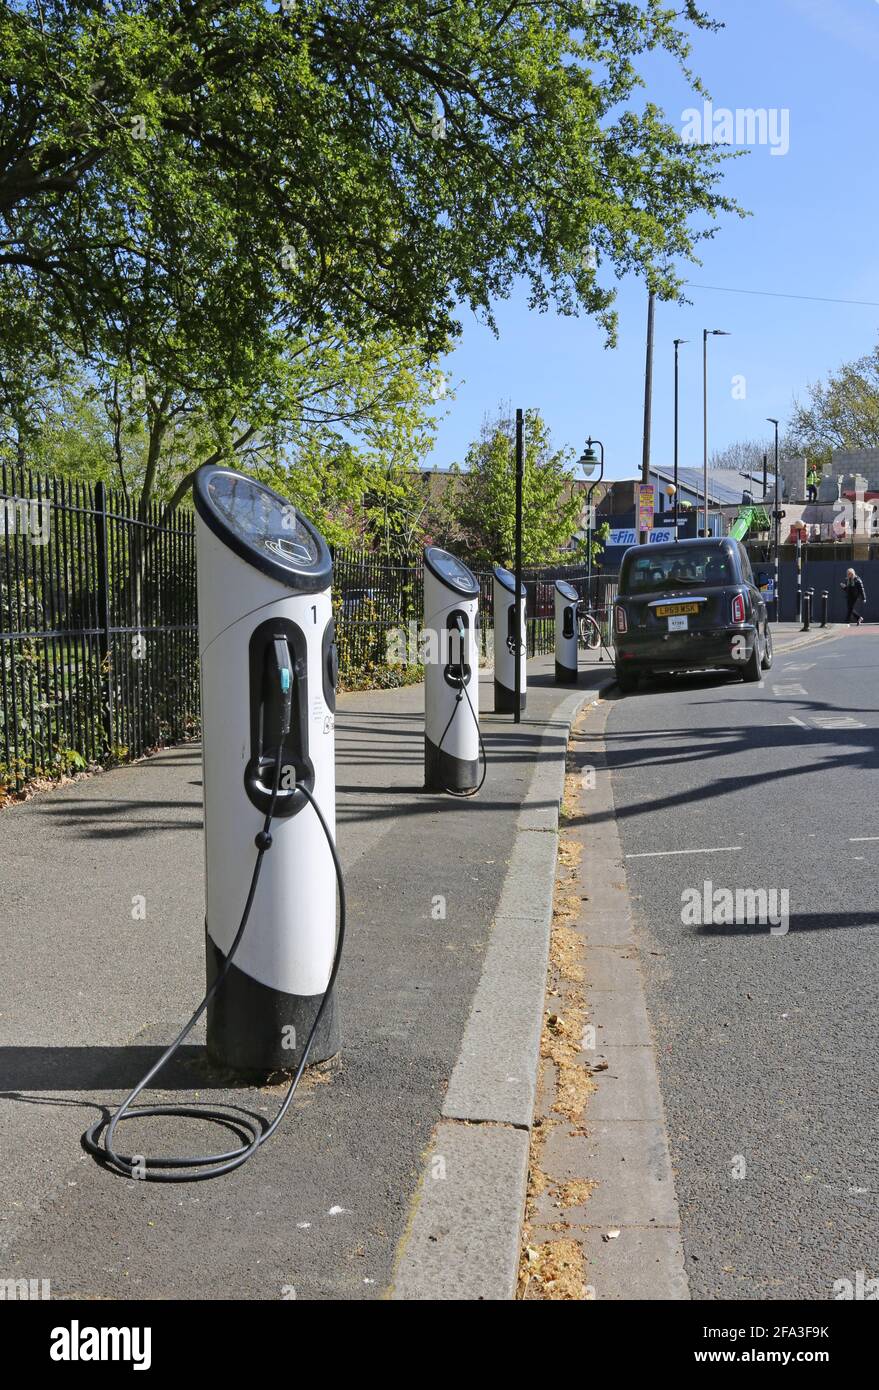 Points de recharge pour véhicule électrique sur Elmwood Rd à Dulwich, Londres, Royaume-Uni. Montre le nouveau LEVC TX plug-in hybride taxi électrique connecté et en charge. Banque D'Images